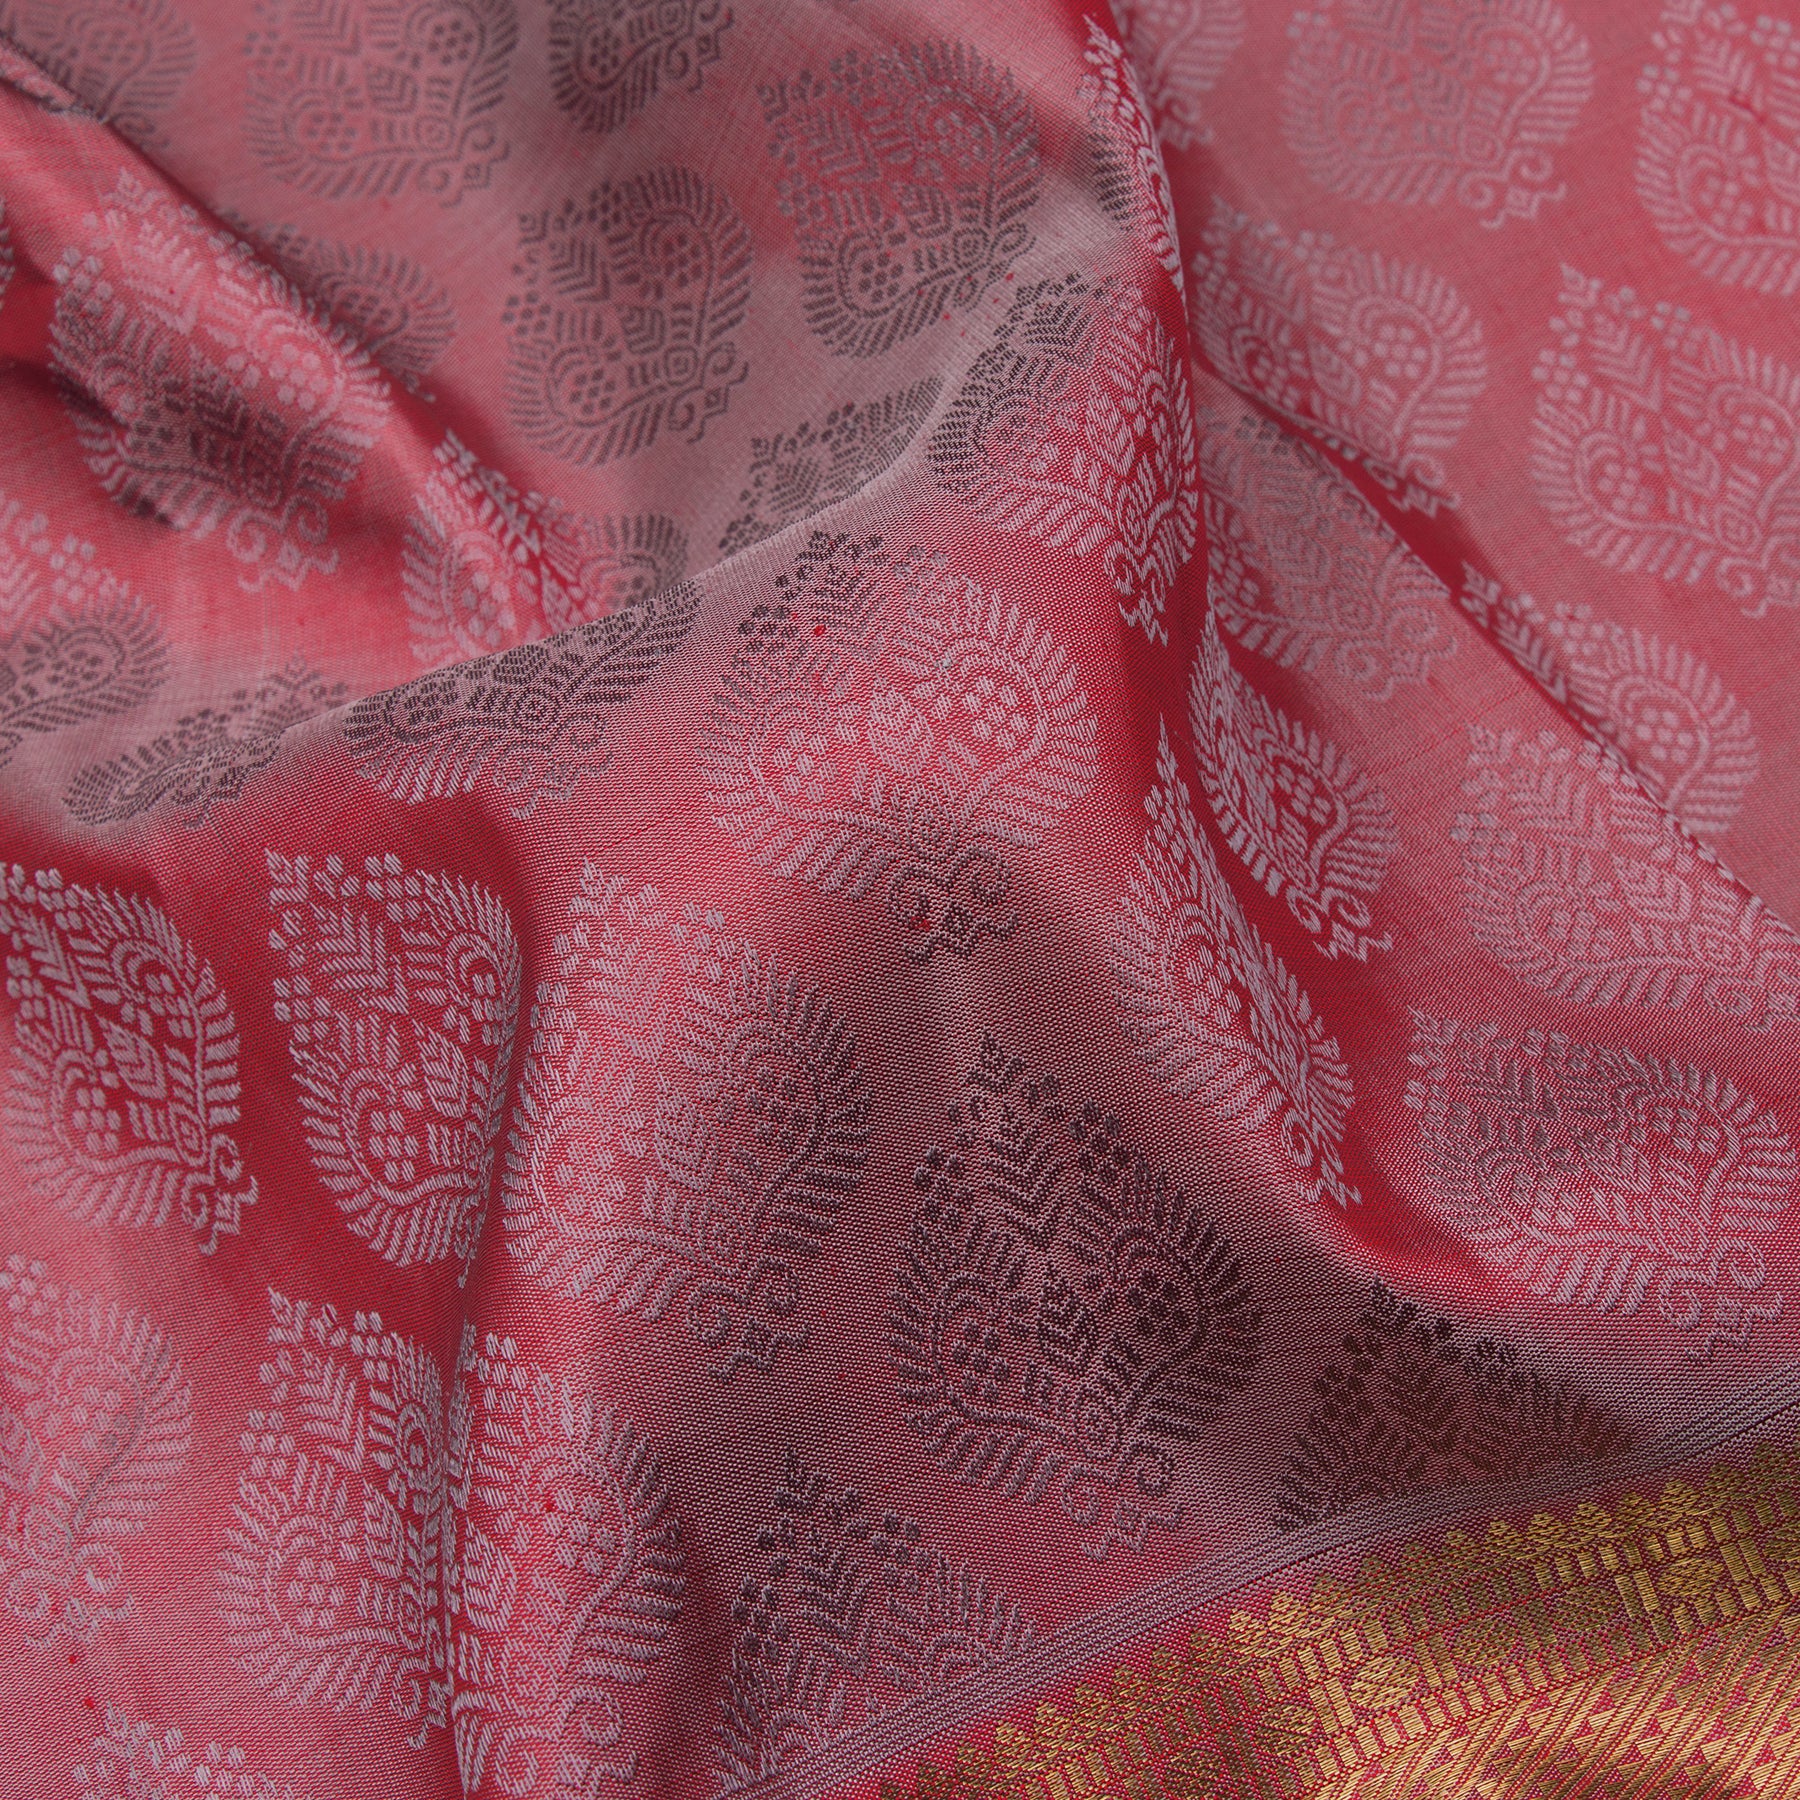 Kanakavalli Kanjivaram Silk Sari 23-599-HS001-06141 - Fabric View